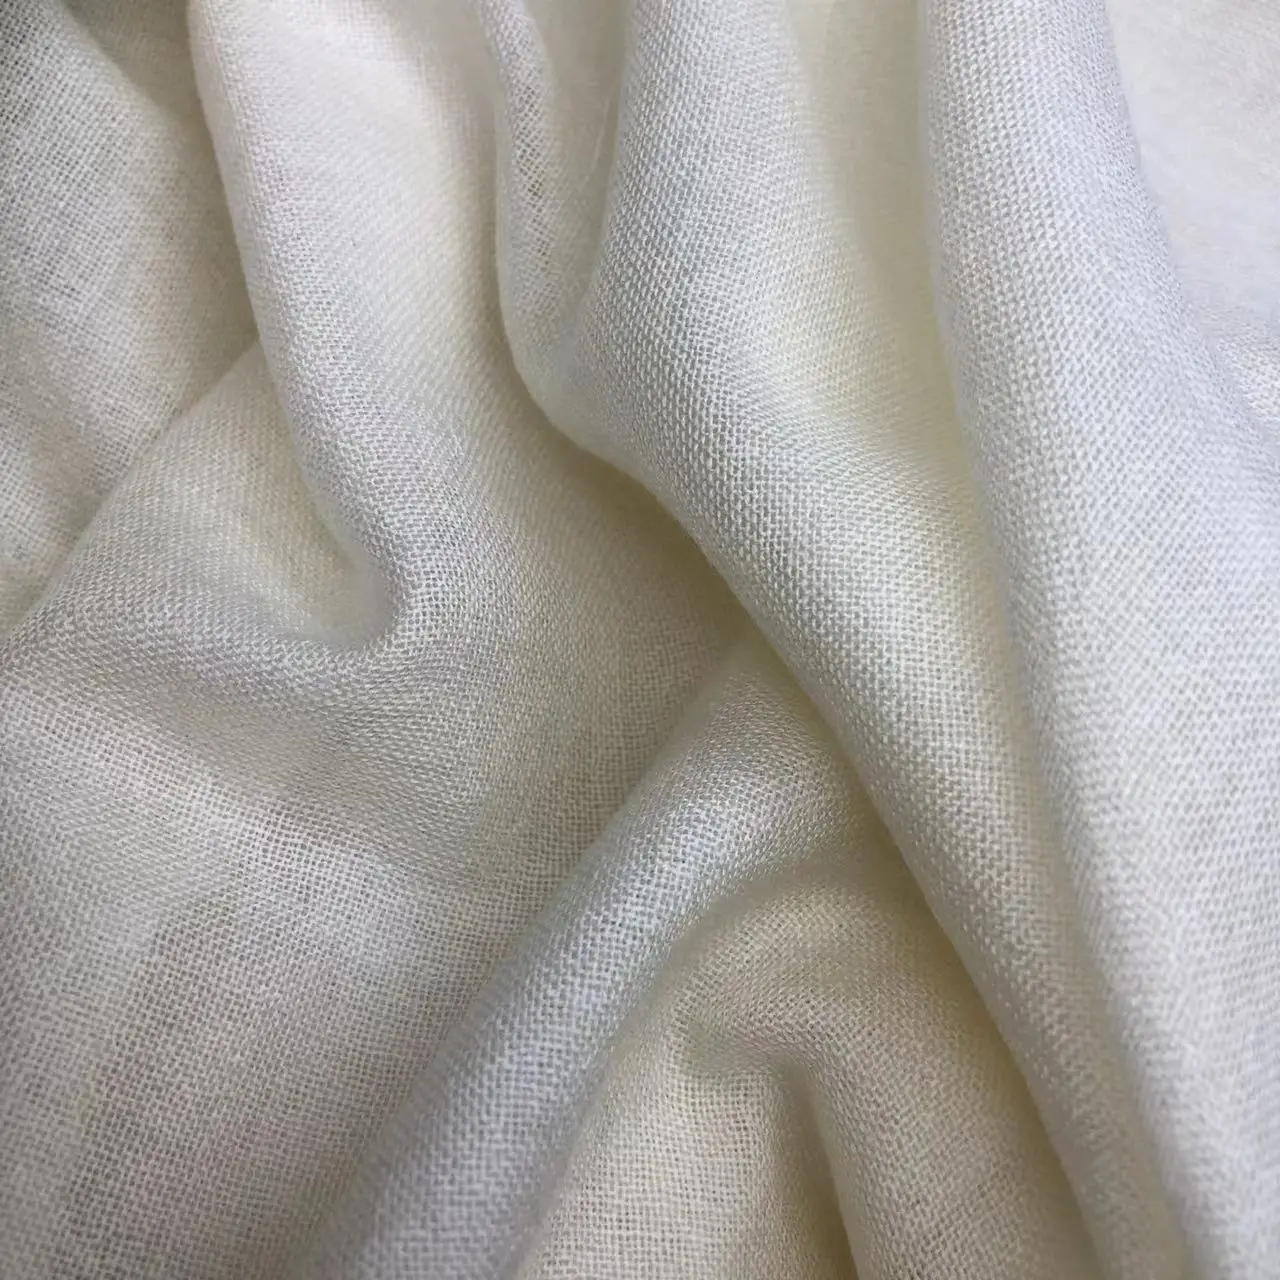 Высококачественная 100% шерстяная ткань для шарфов, готовая к окрашиванию и печати/шерстяная ткань для шарфов/Легкая шерстяная ткань для шарфов